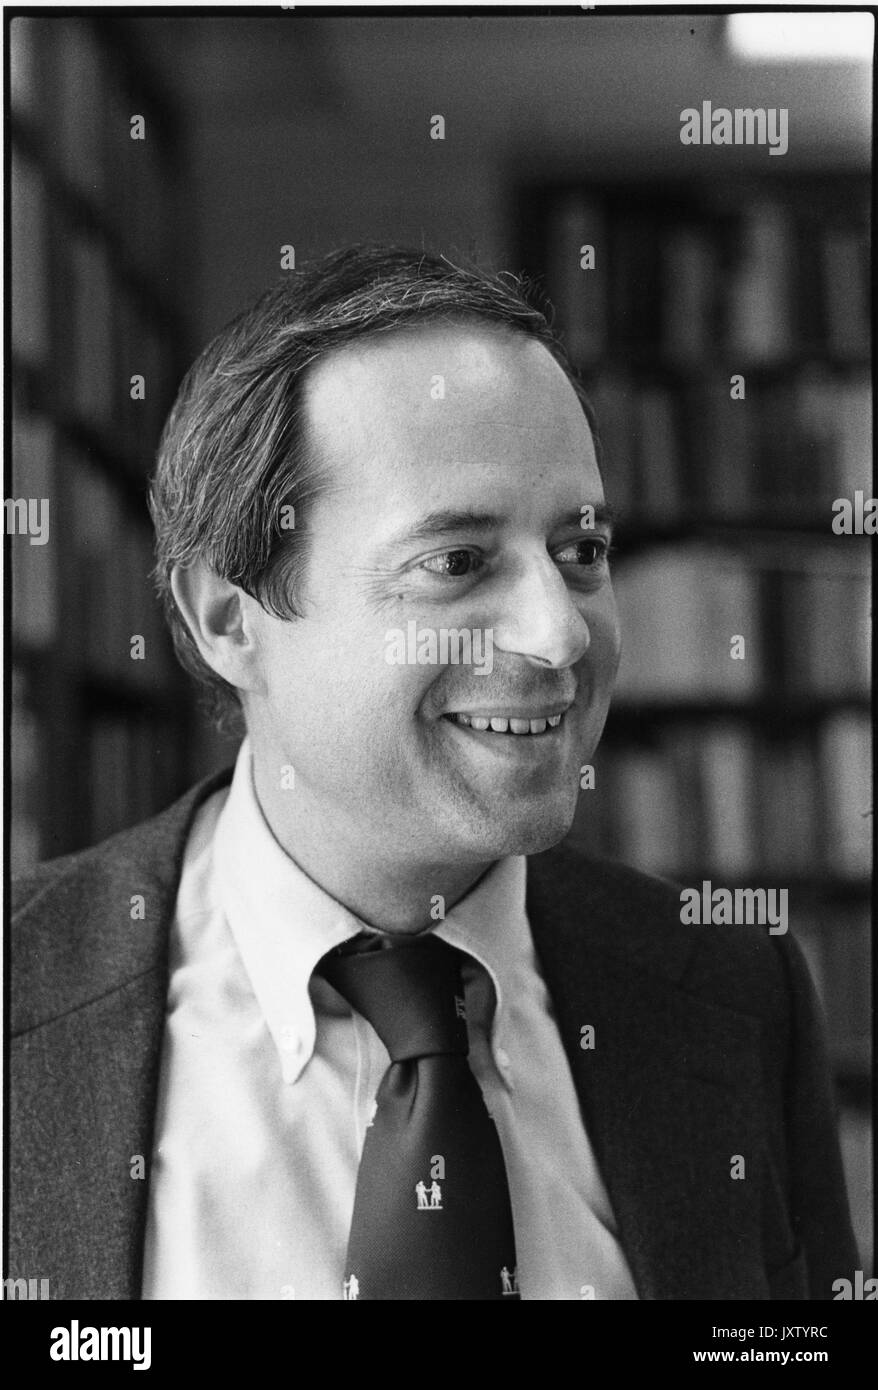 Steven Muller, centennial Bankett portrait Foto, Brust, Full Face, c 49 Jahre alt, 1976. Stockfoto